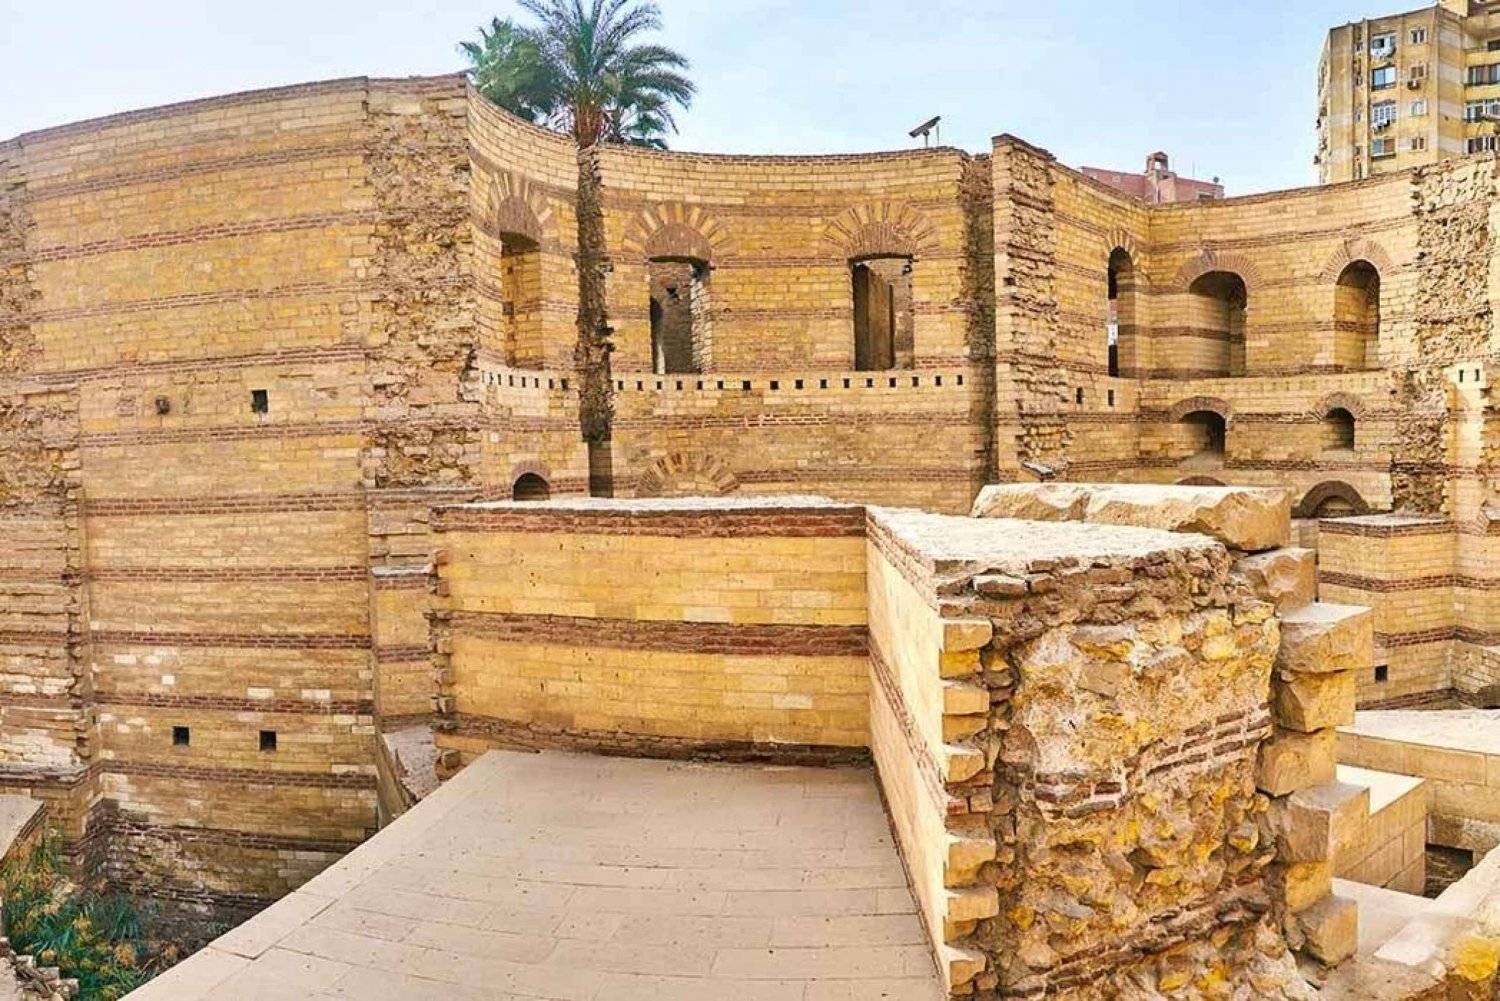 Caïro: Privétour naar het oude Caïro en het Fort van Babylon